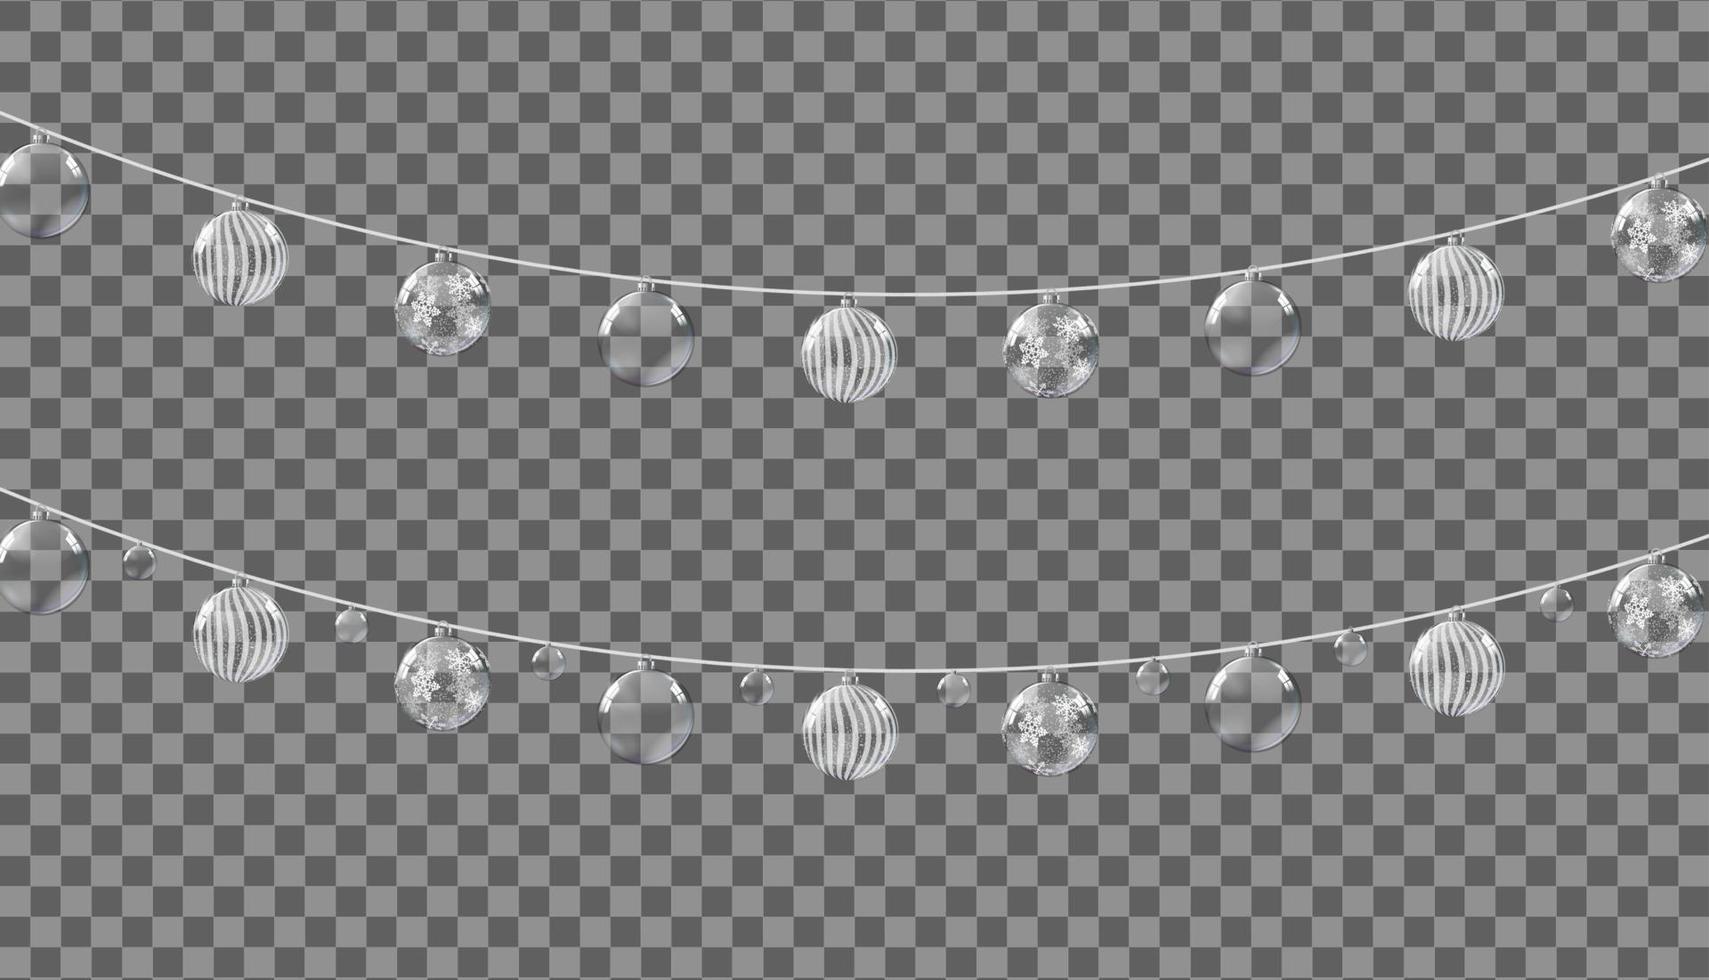 kerstversiering, slingers met ballen geïsoleerd op transparante achtergrond. vector illustratie